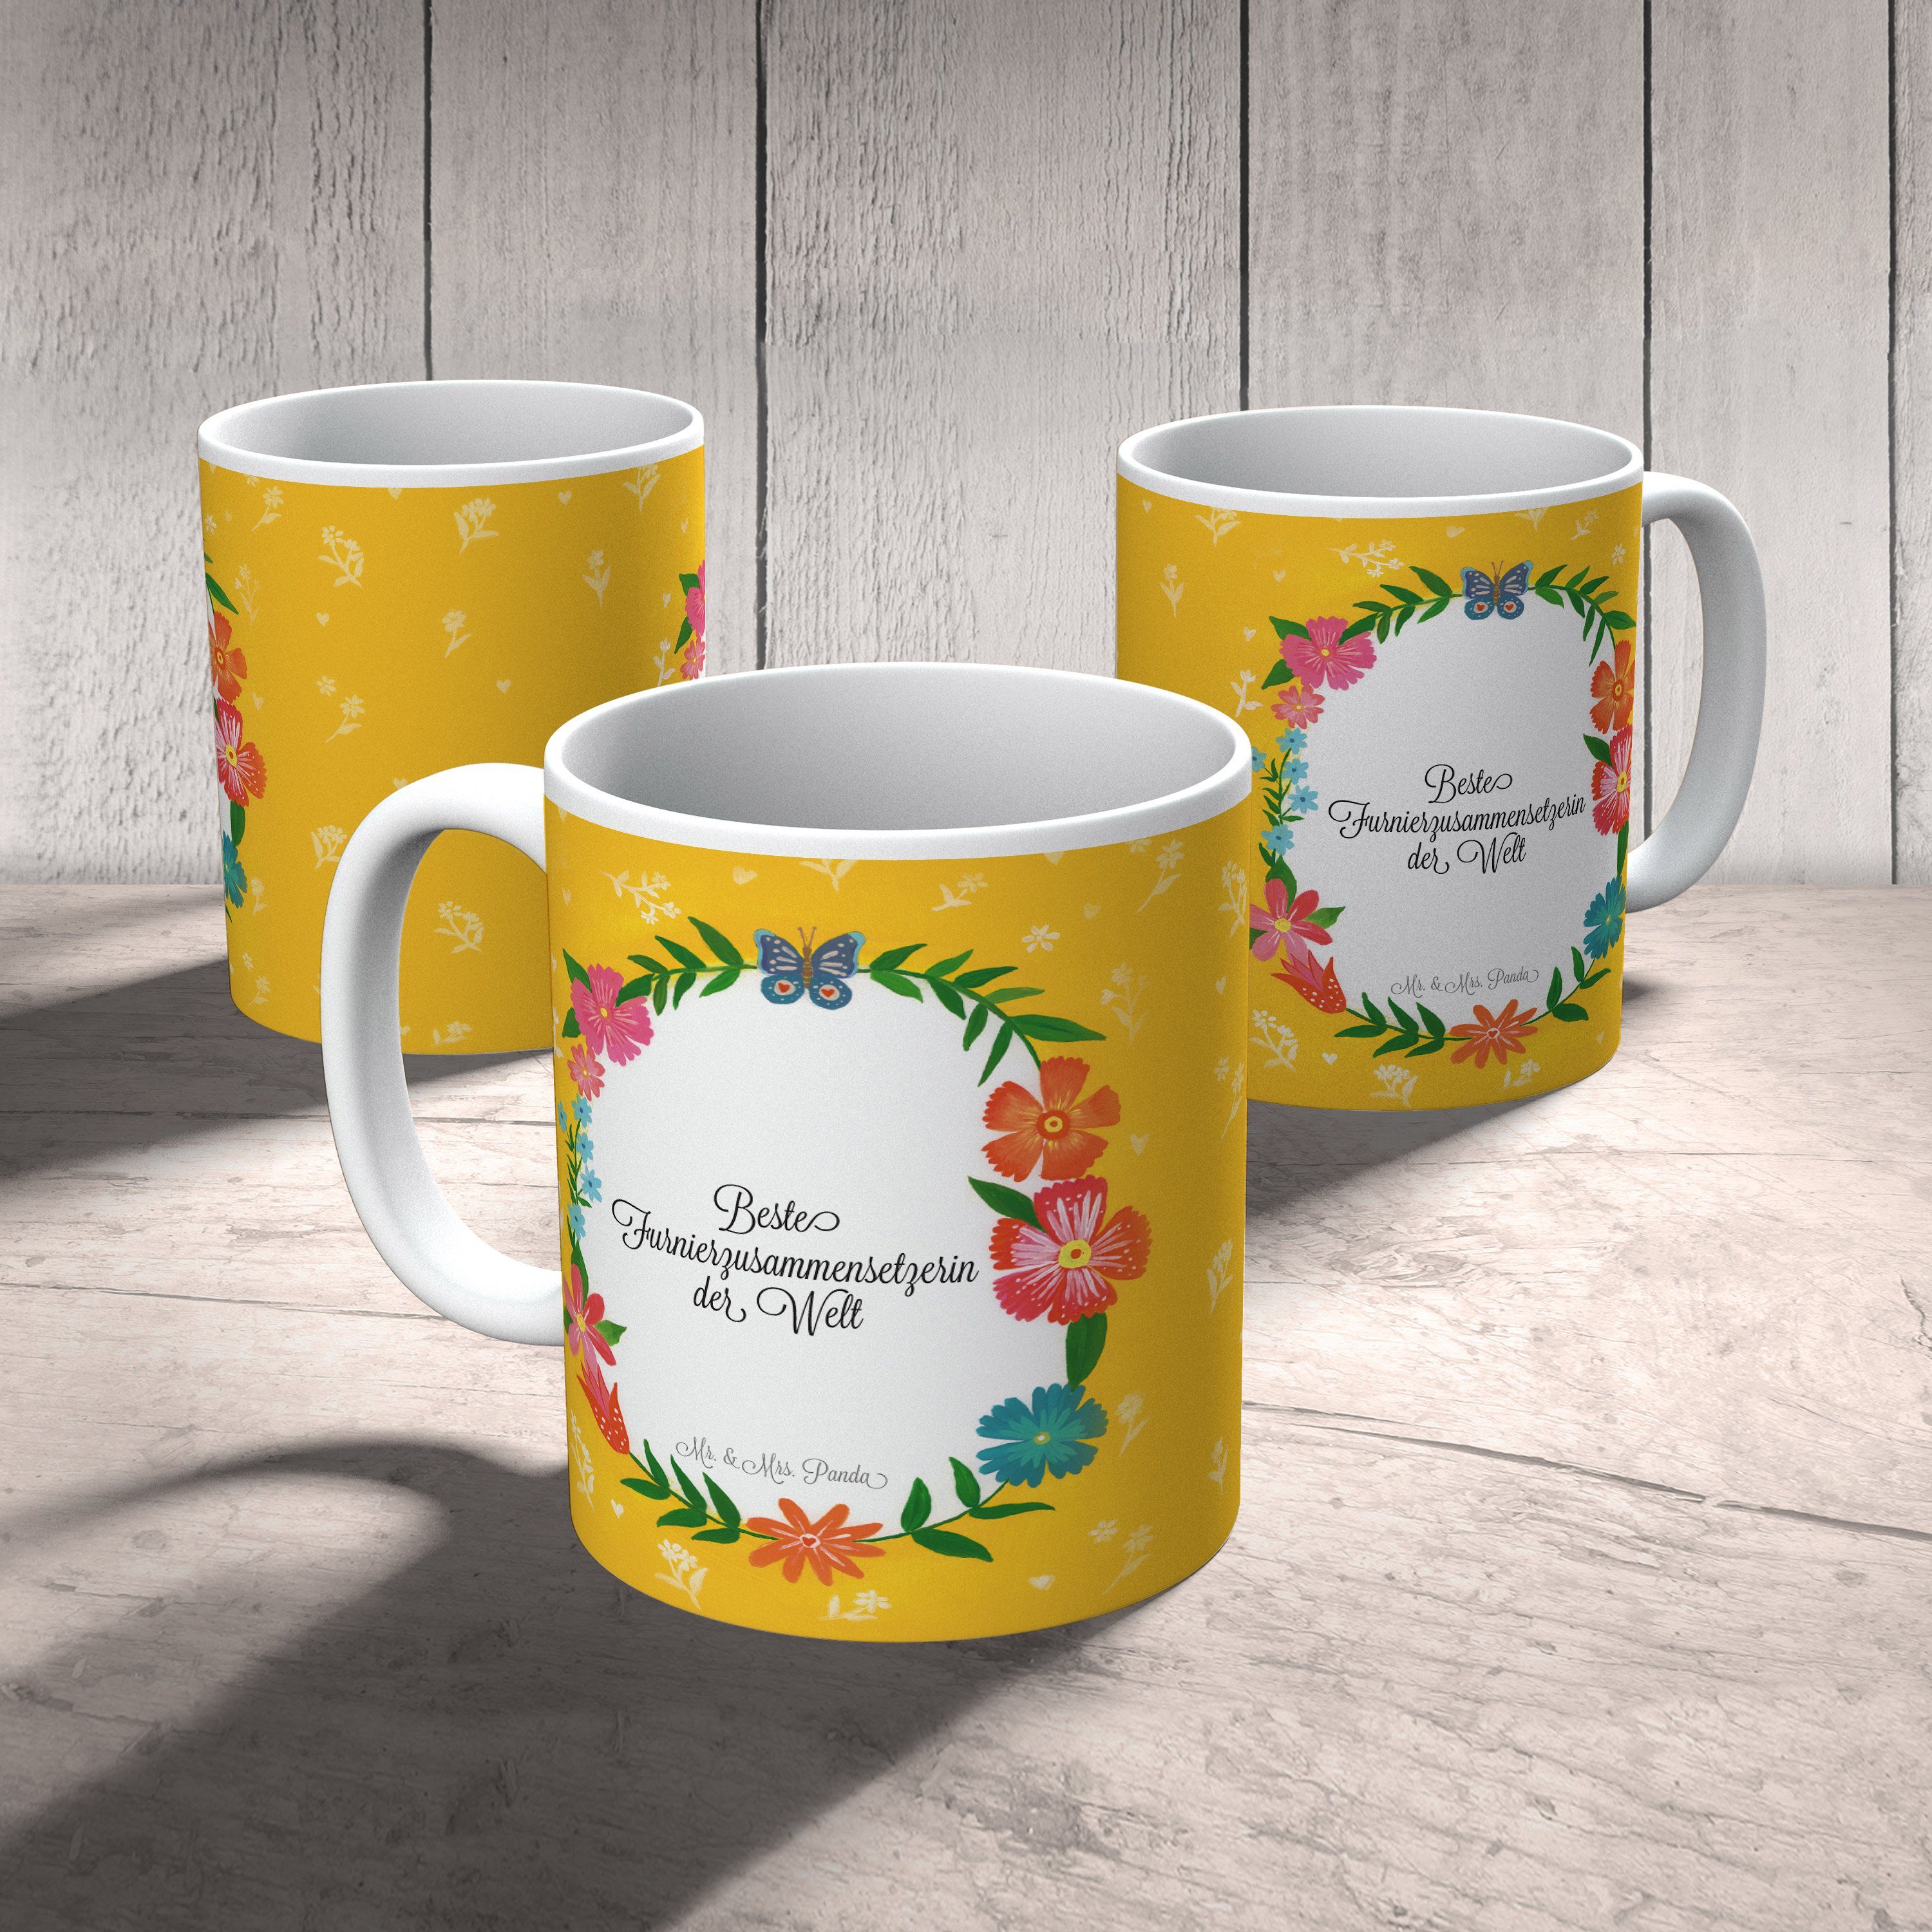 Mr. & Mrs. Tasse Geschenk, Tasse Keramik Abschied, - Kaffeebec, Panda Motive, Furnierzusammensetzerin